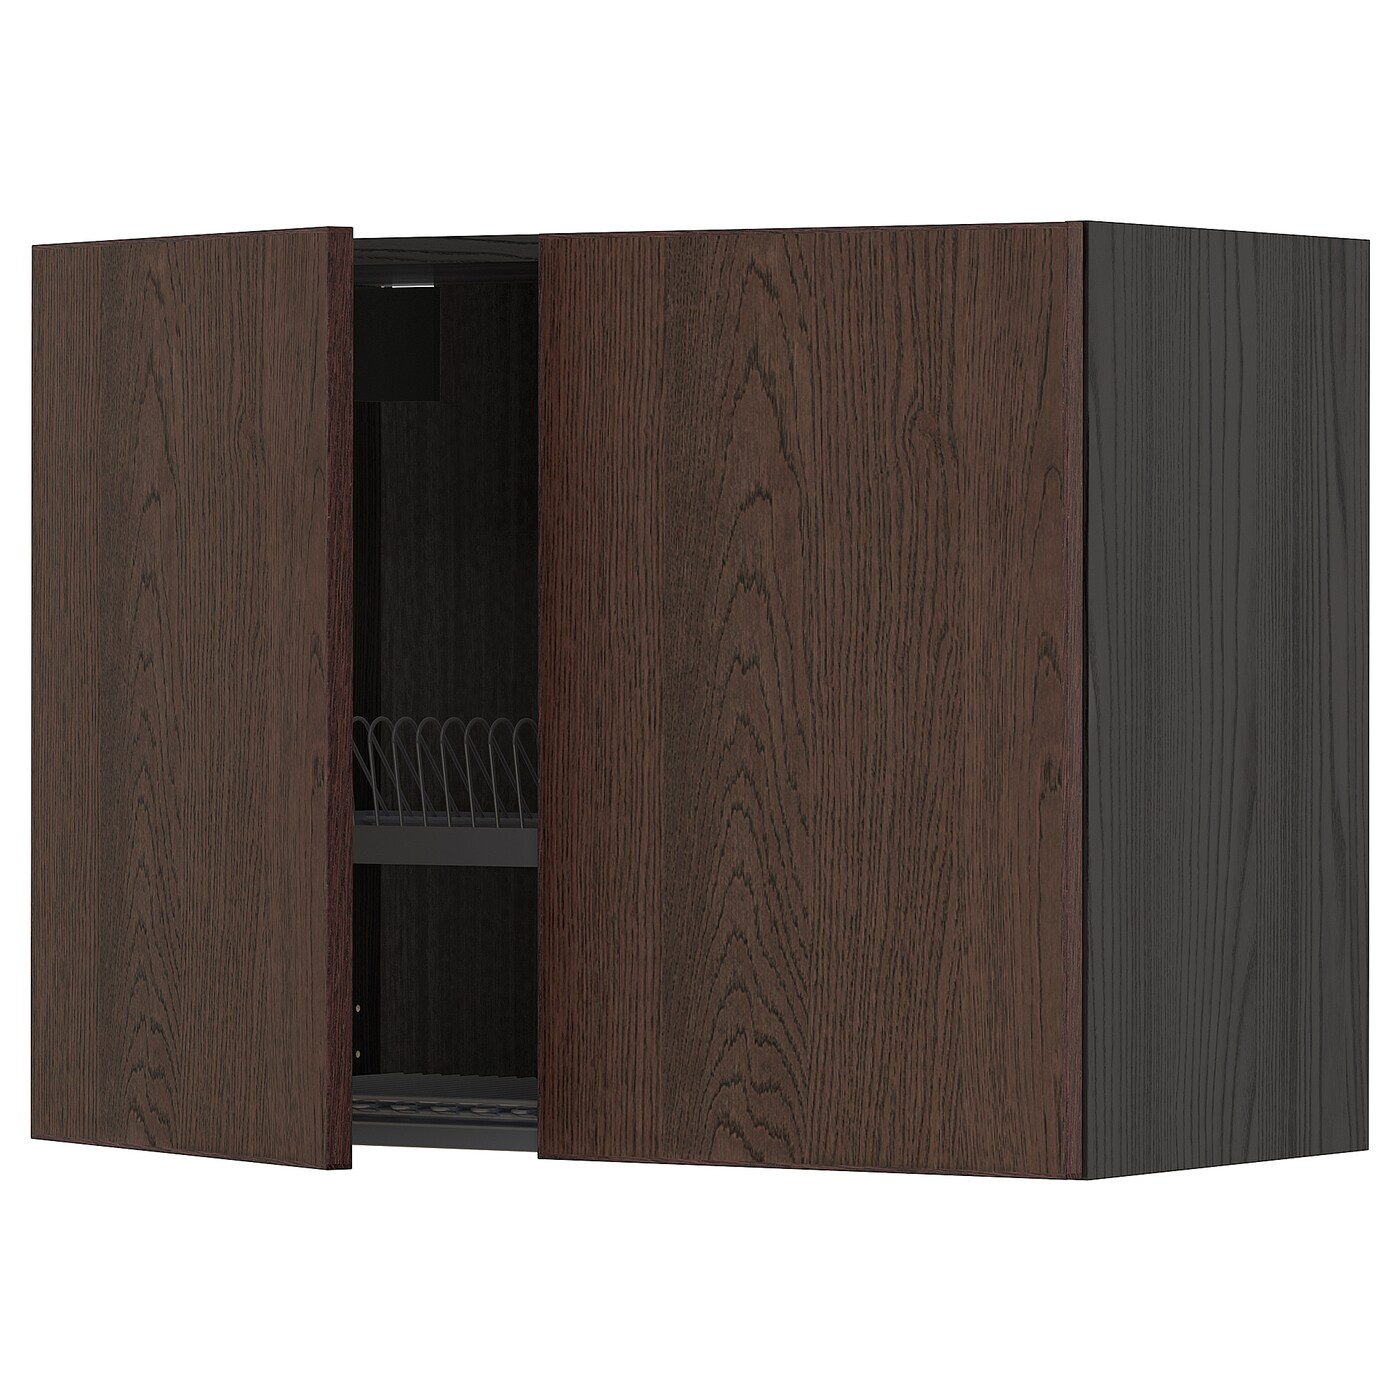 Навесной шкаф с сушилкой - METOD IKEA/ МЕТОД ИКЕА, 60х80 см, черный/коричневый